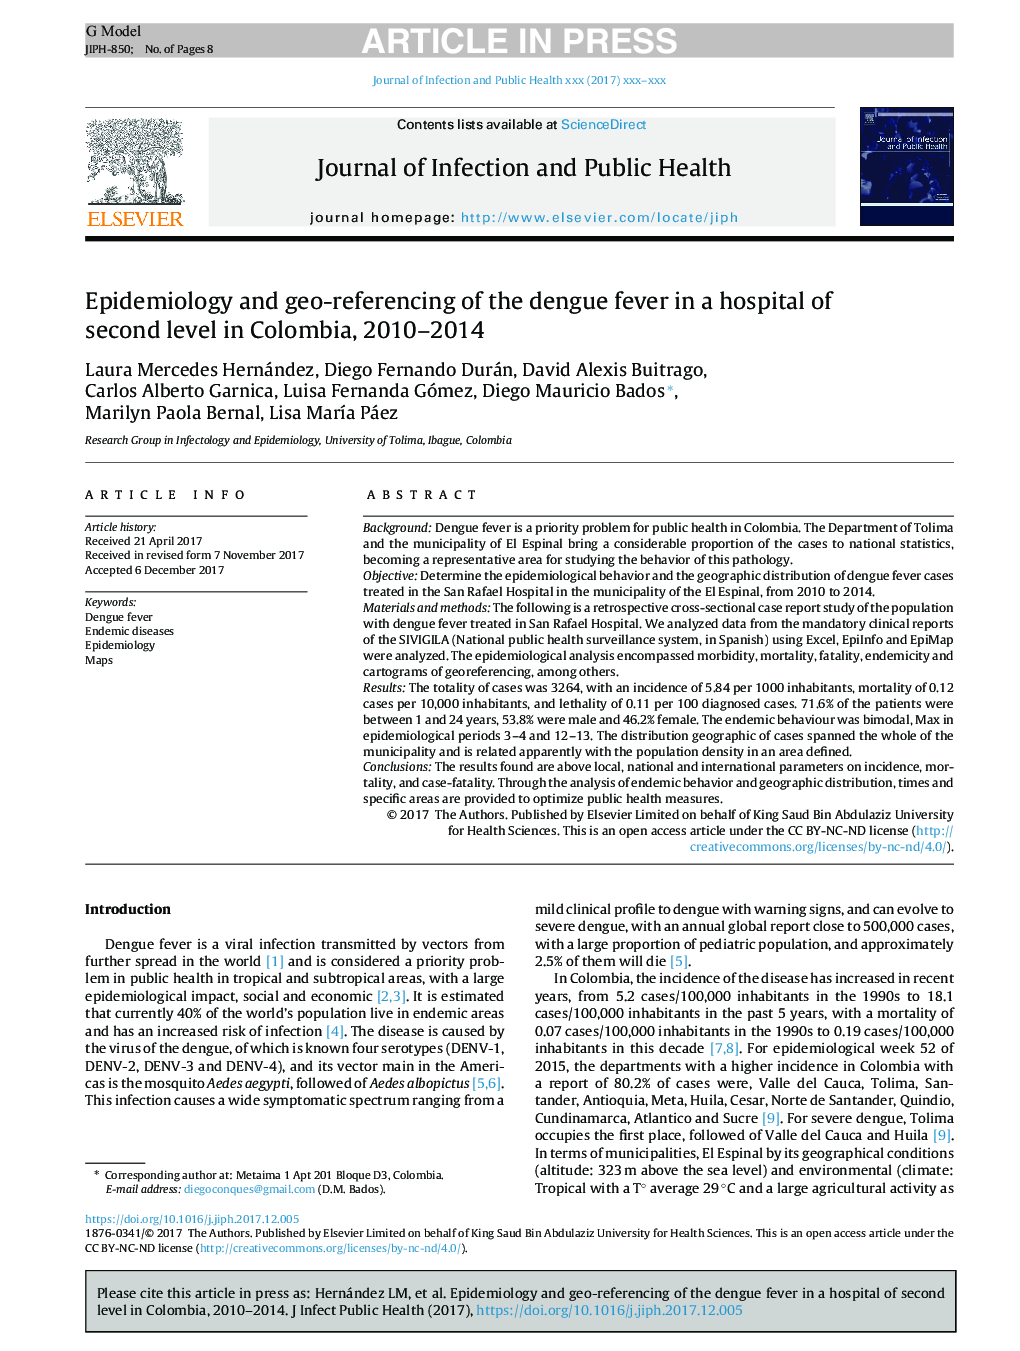 اپیدمیولوژی و ارجاع جغرافیایی تب دیوانه در بیمارستان سطح دوم کلمبیا، 2010-2014 